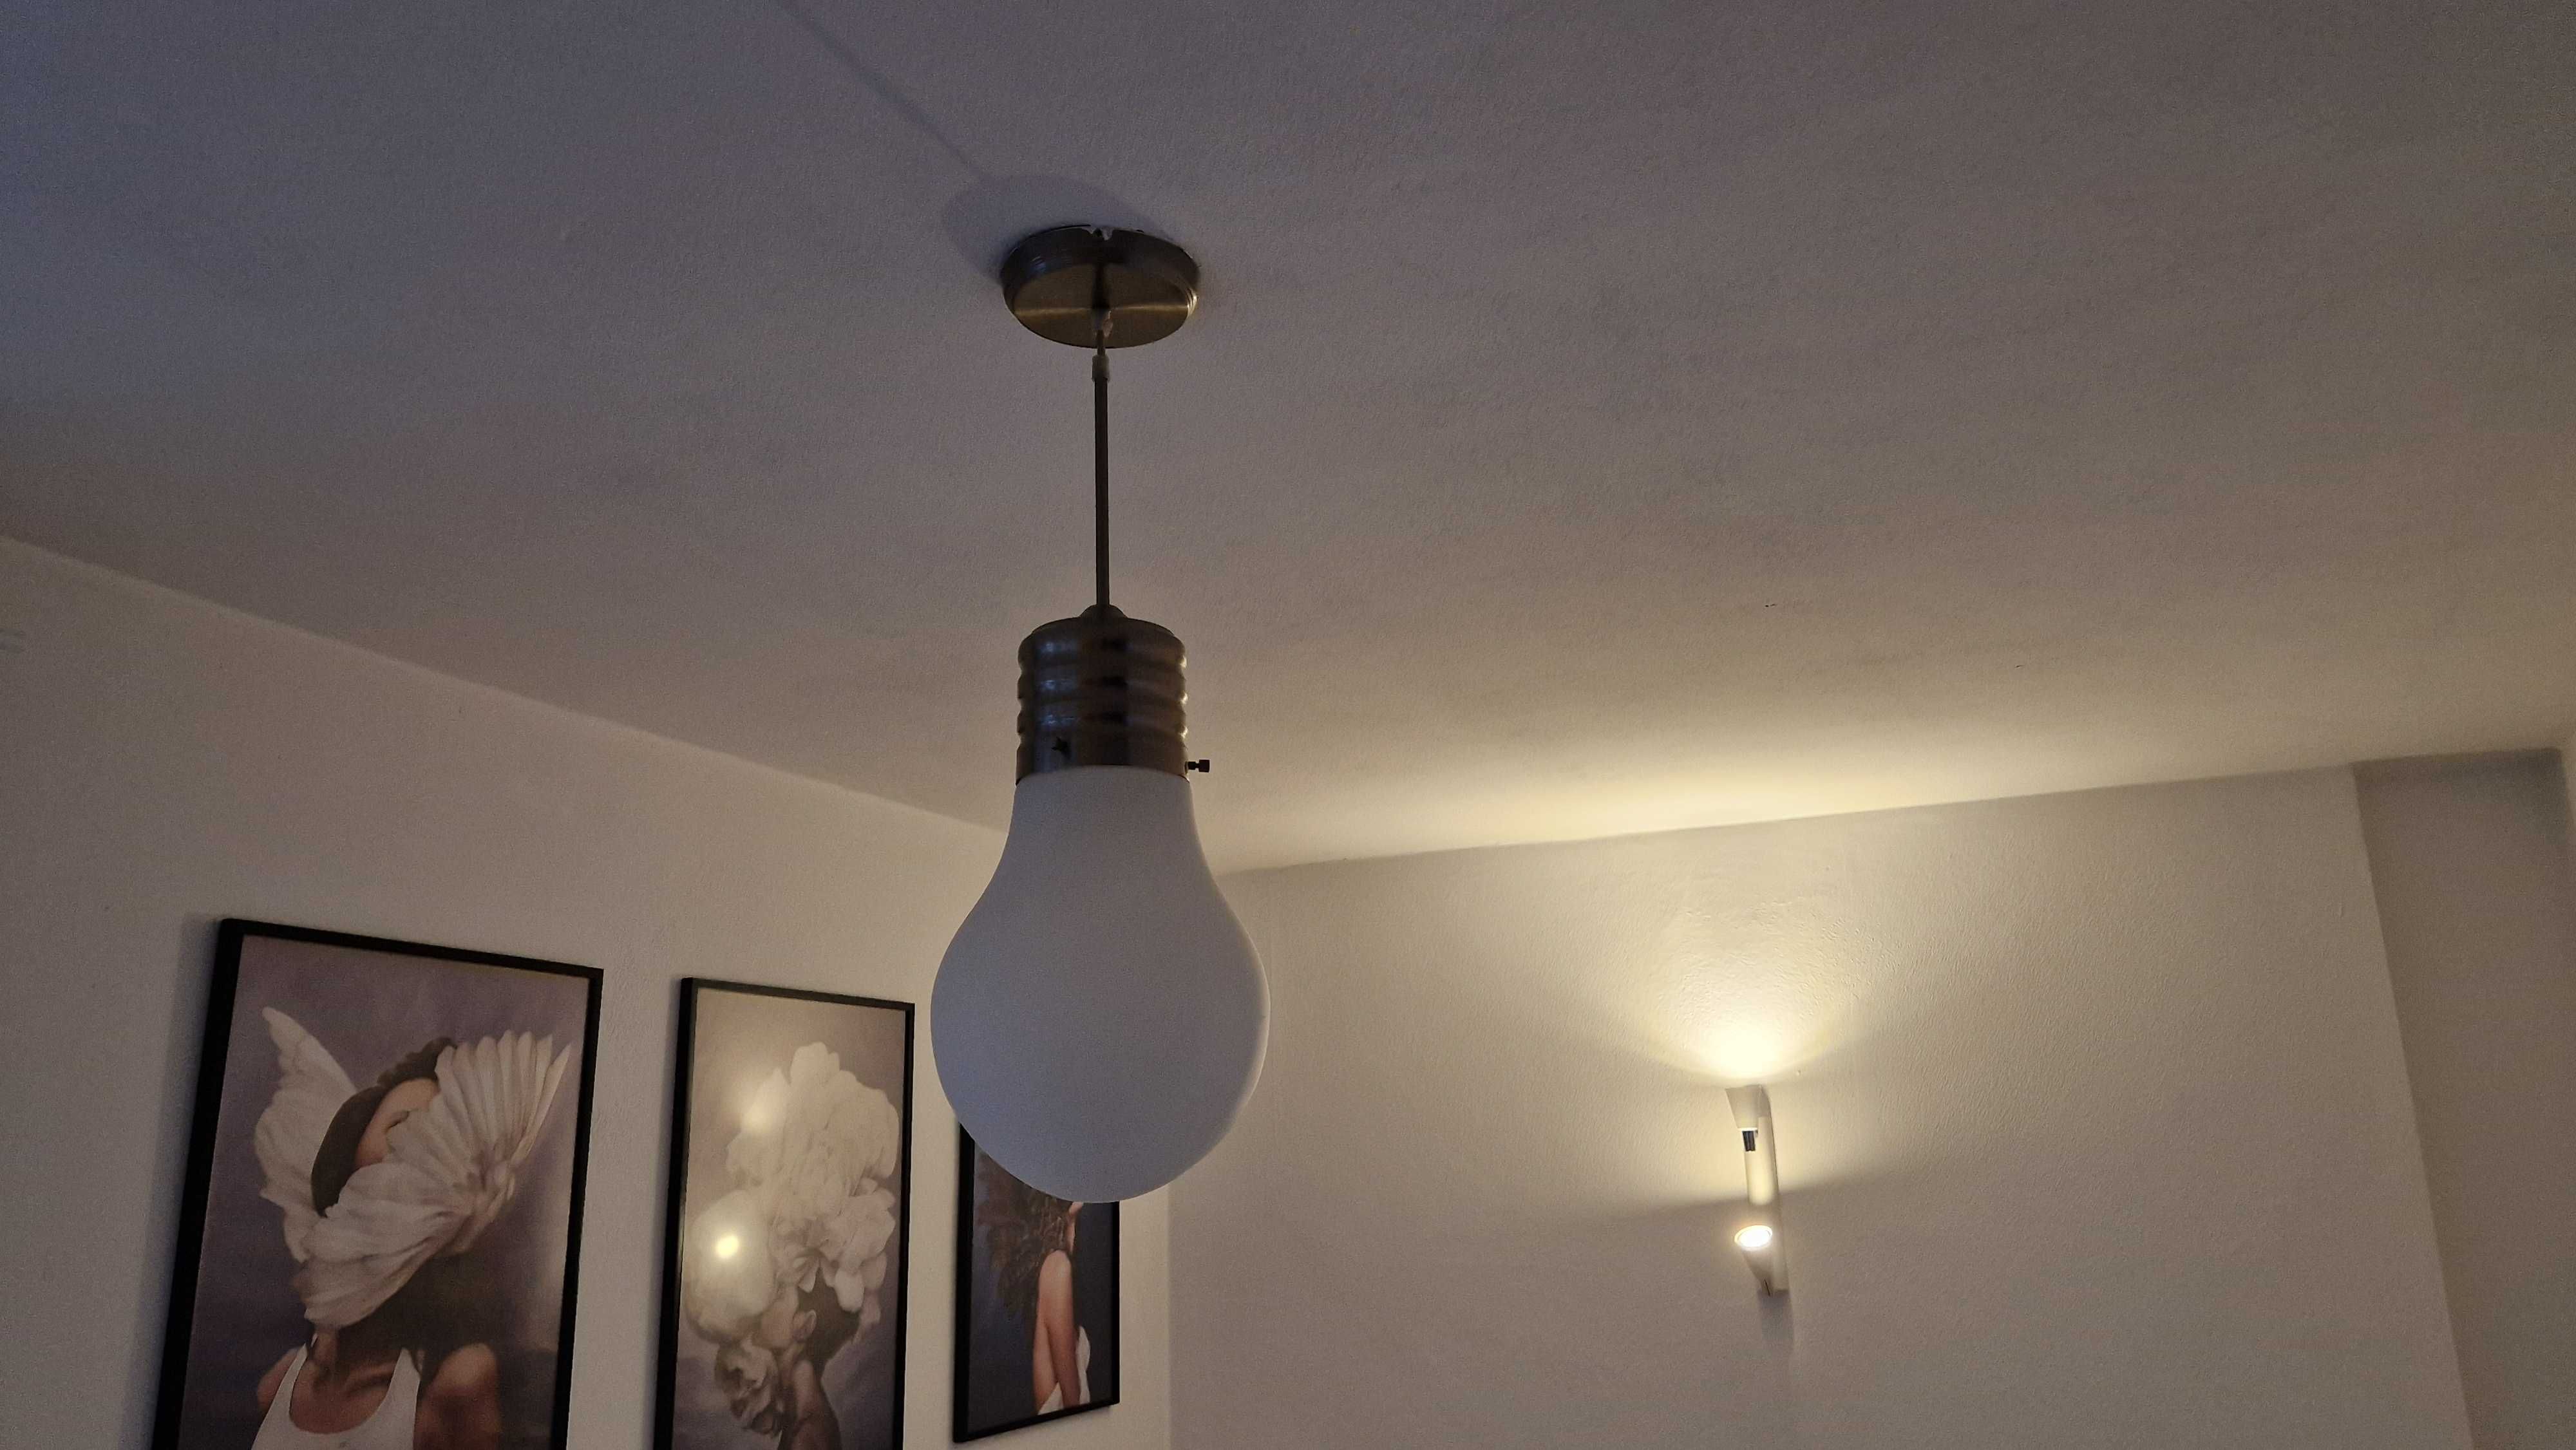 lampa typu ŻAROWKA, ok 60cm